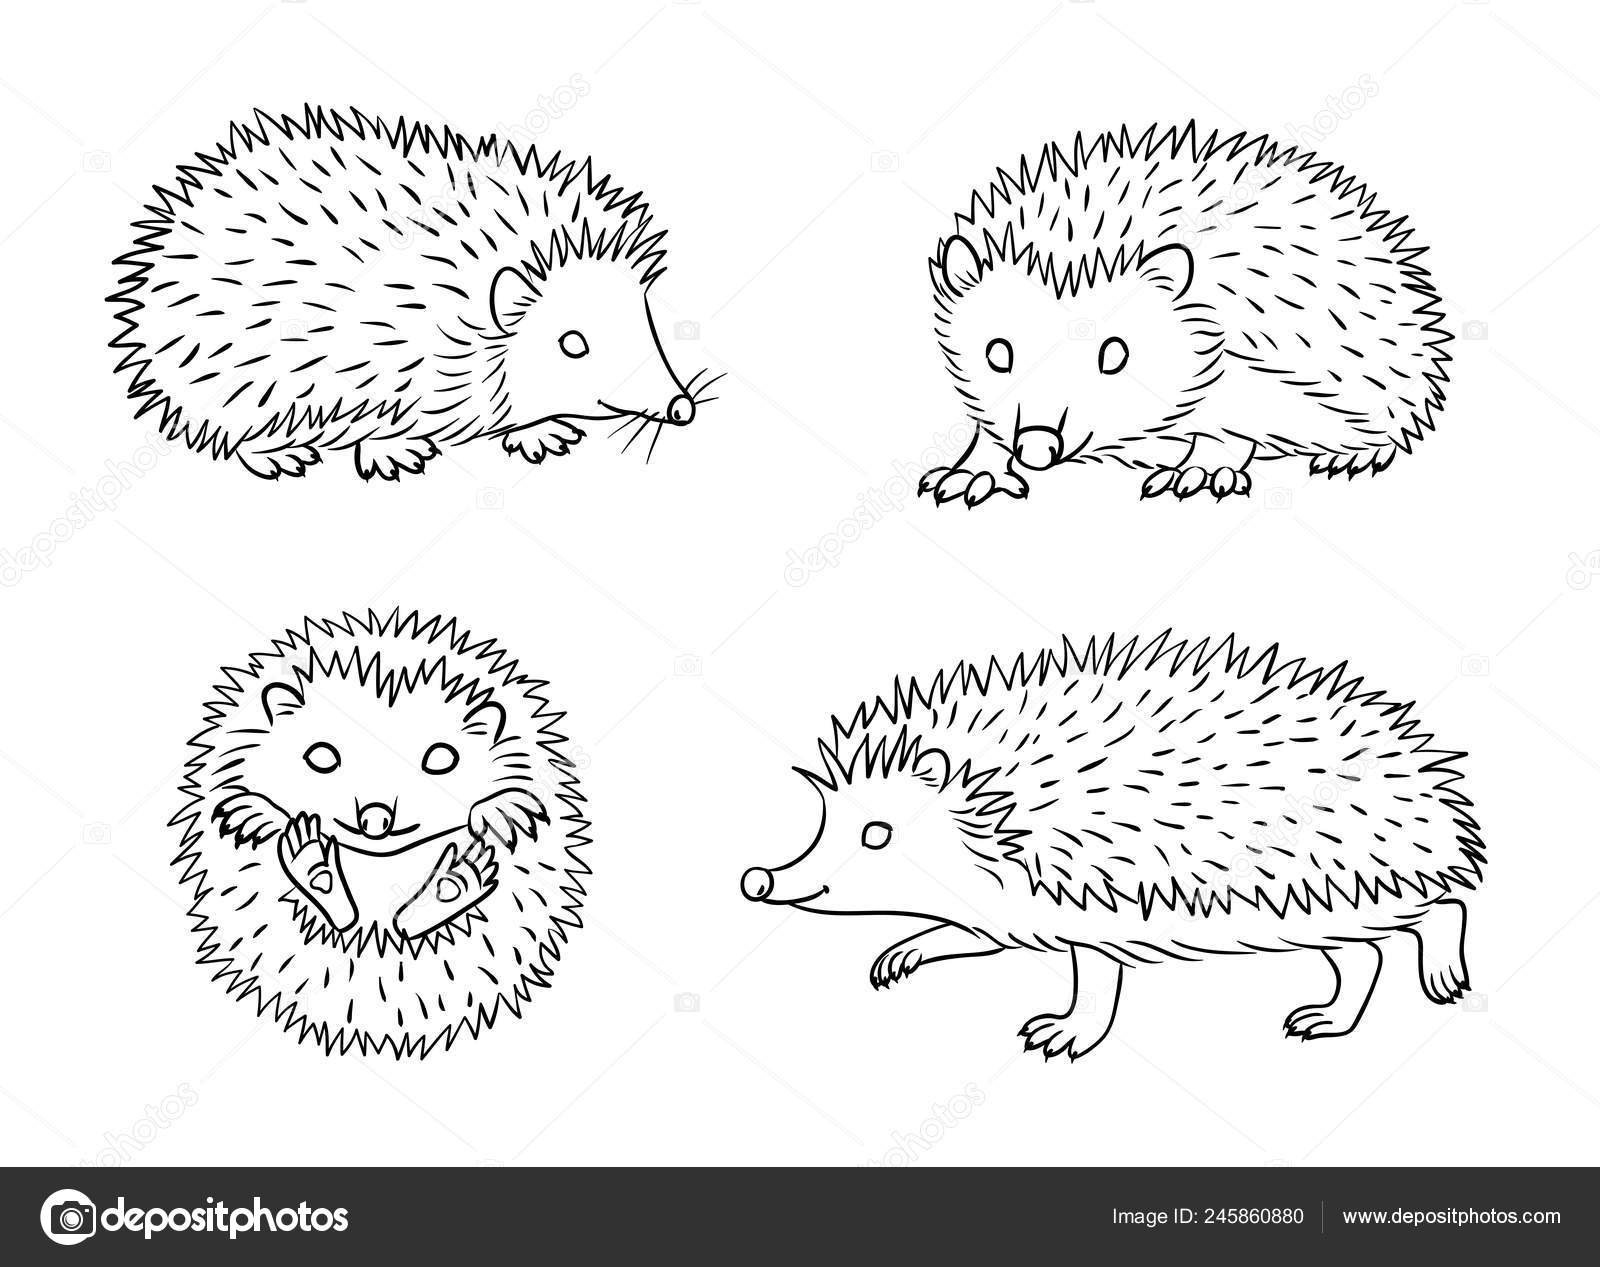 hedgehog illustration black and white